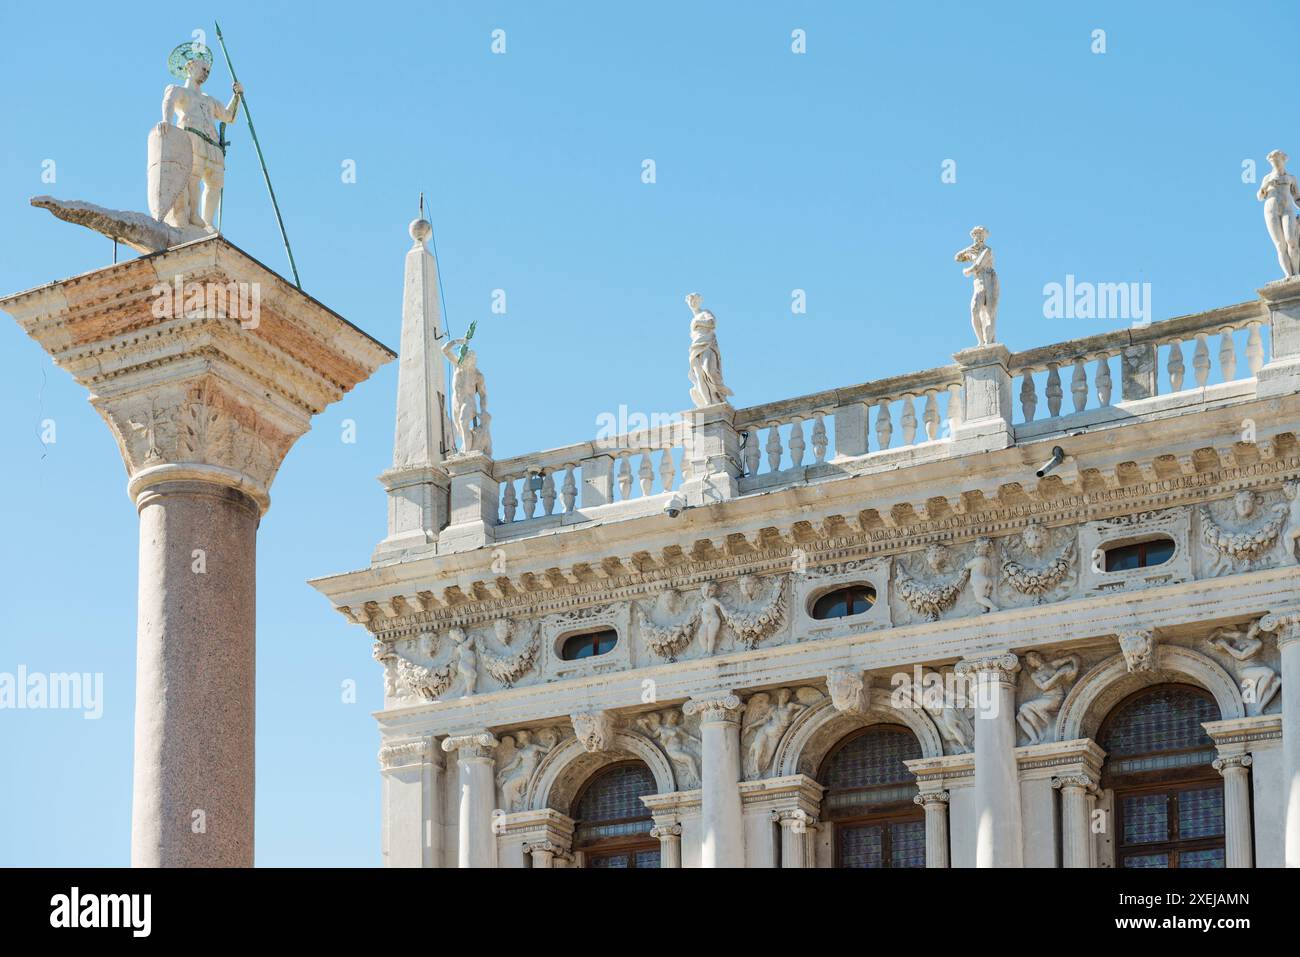 Colonne de San Teodoro et bâtiment de la Bibliothèque nationale sur la place Saint-Marc à Venise, Italie Banque D'Images